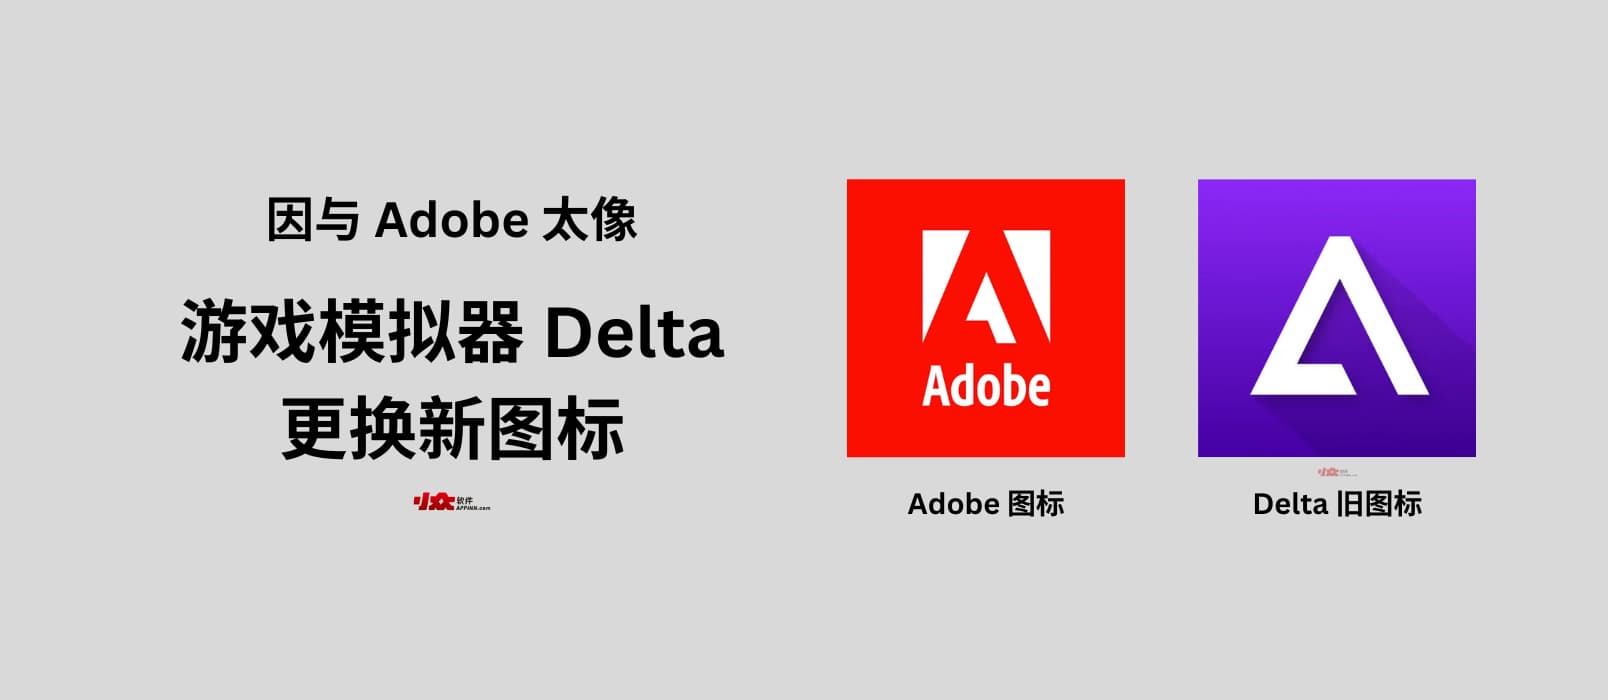 Adobe 威胁起诉游戏模拟器 Delta 图标太像，于是 Delta 换了新图标